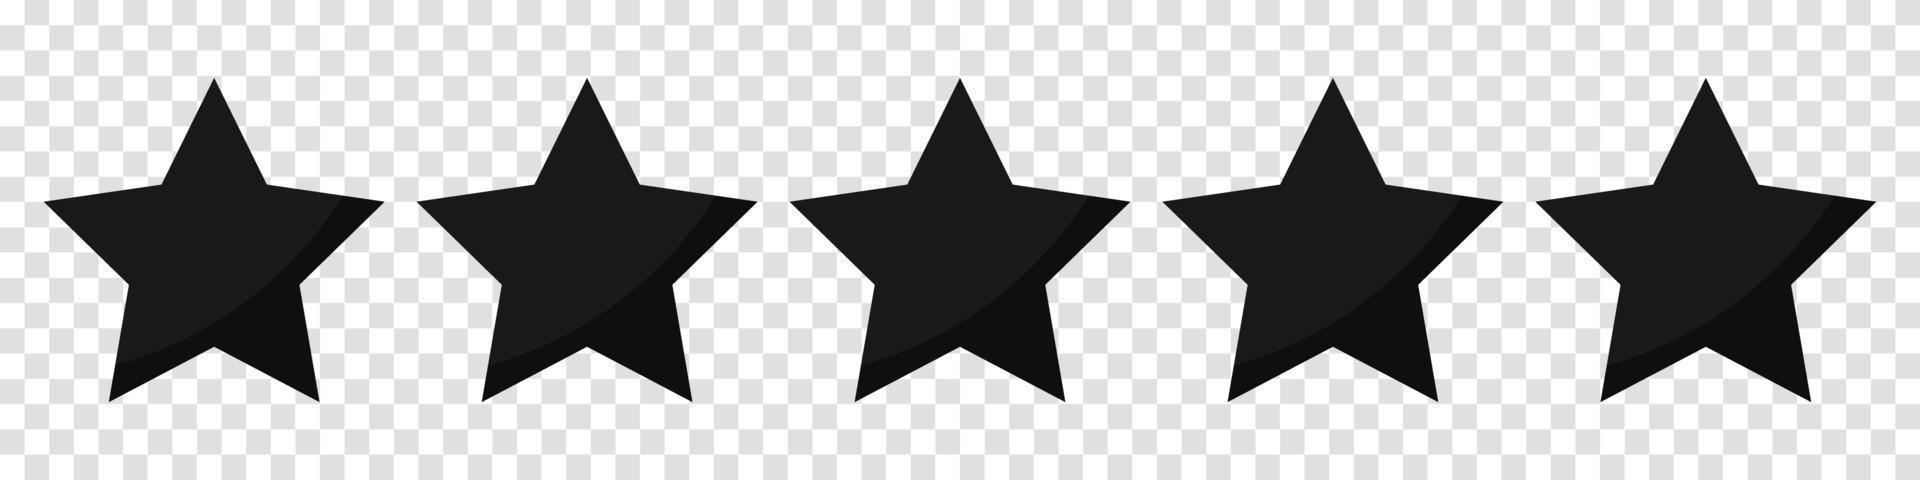 icone di valutazione della qualità a cinque stelle. Icona 5 stelle. segno a cinque stelle. simbolo di valutazione. illustrazione vettoriale